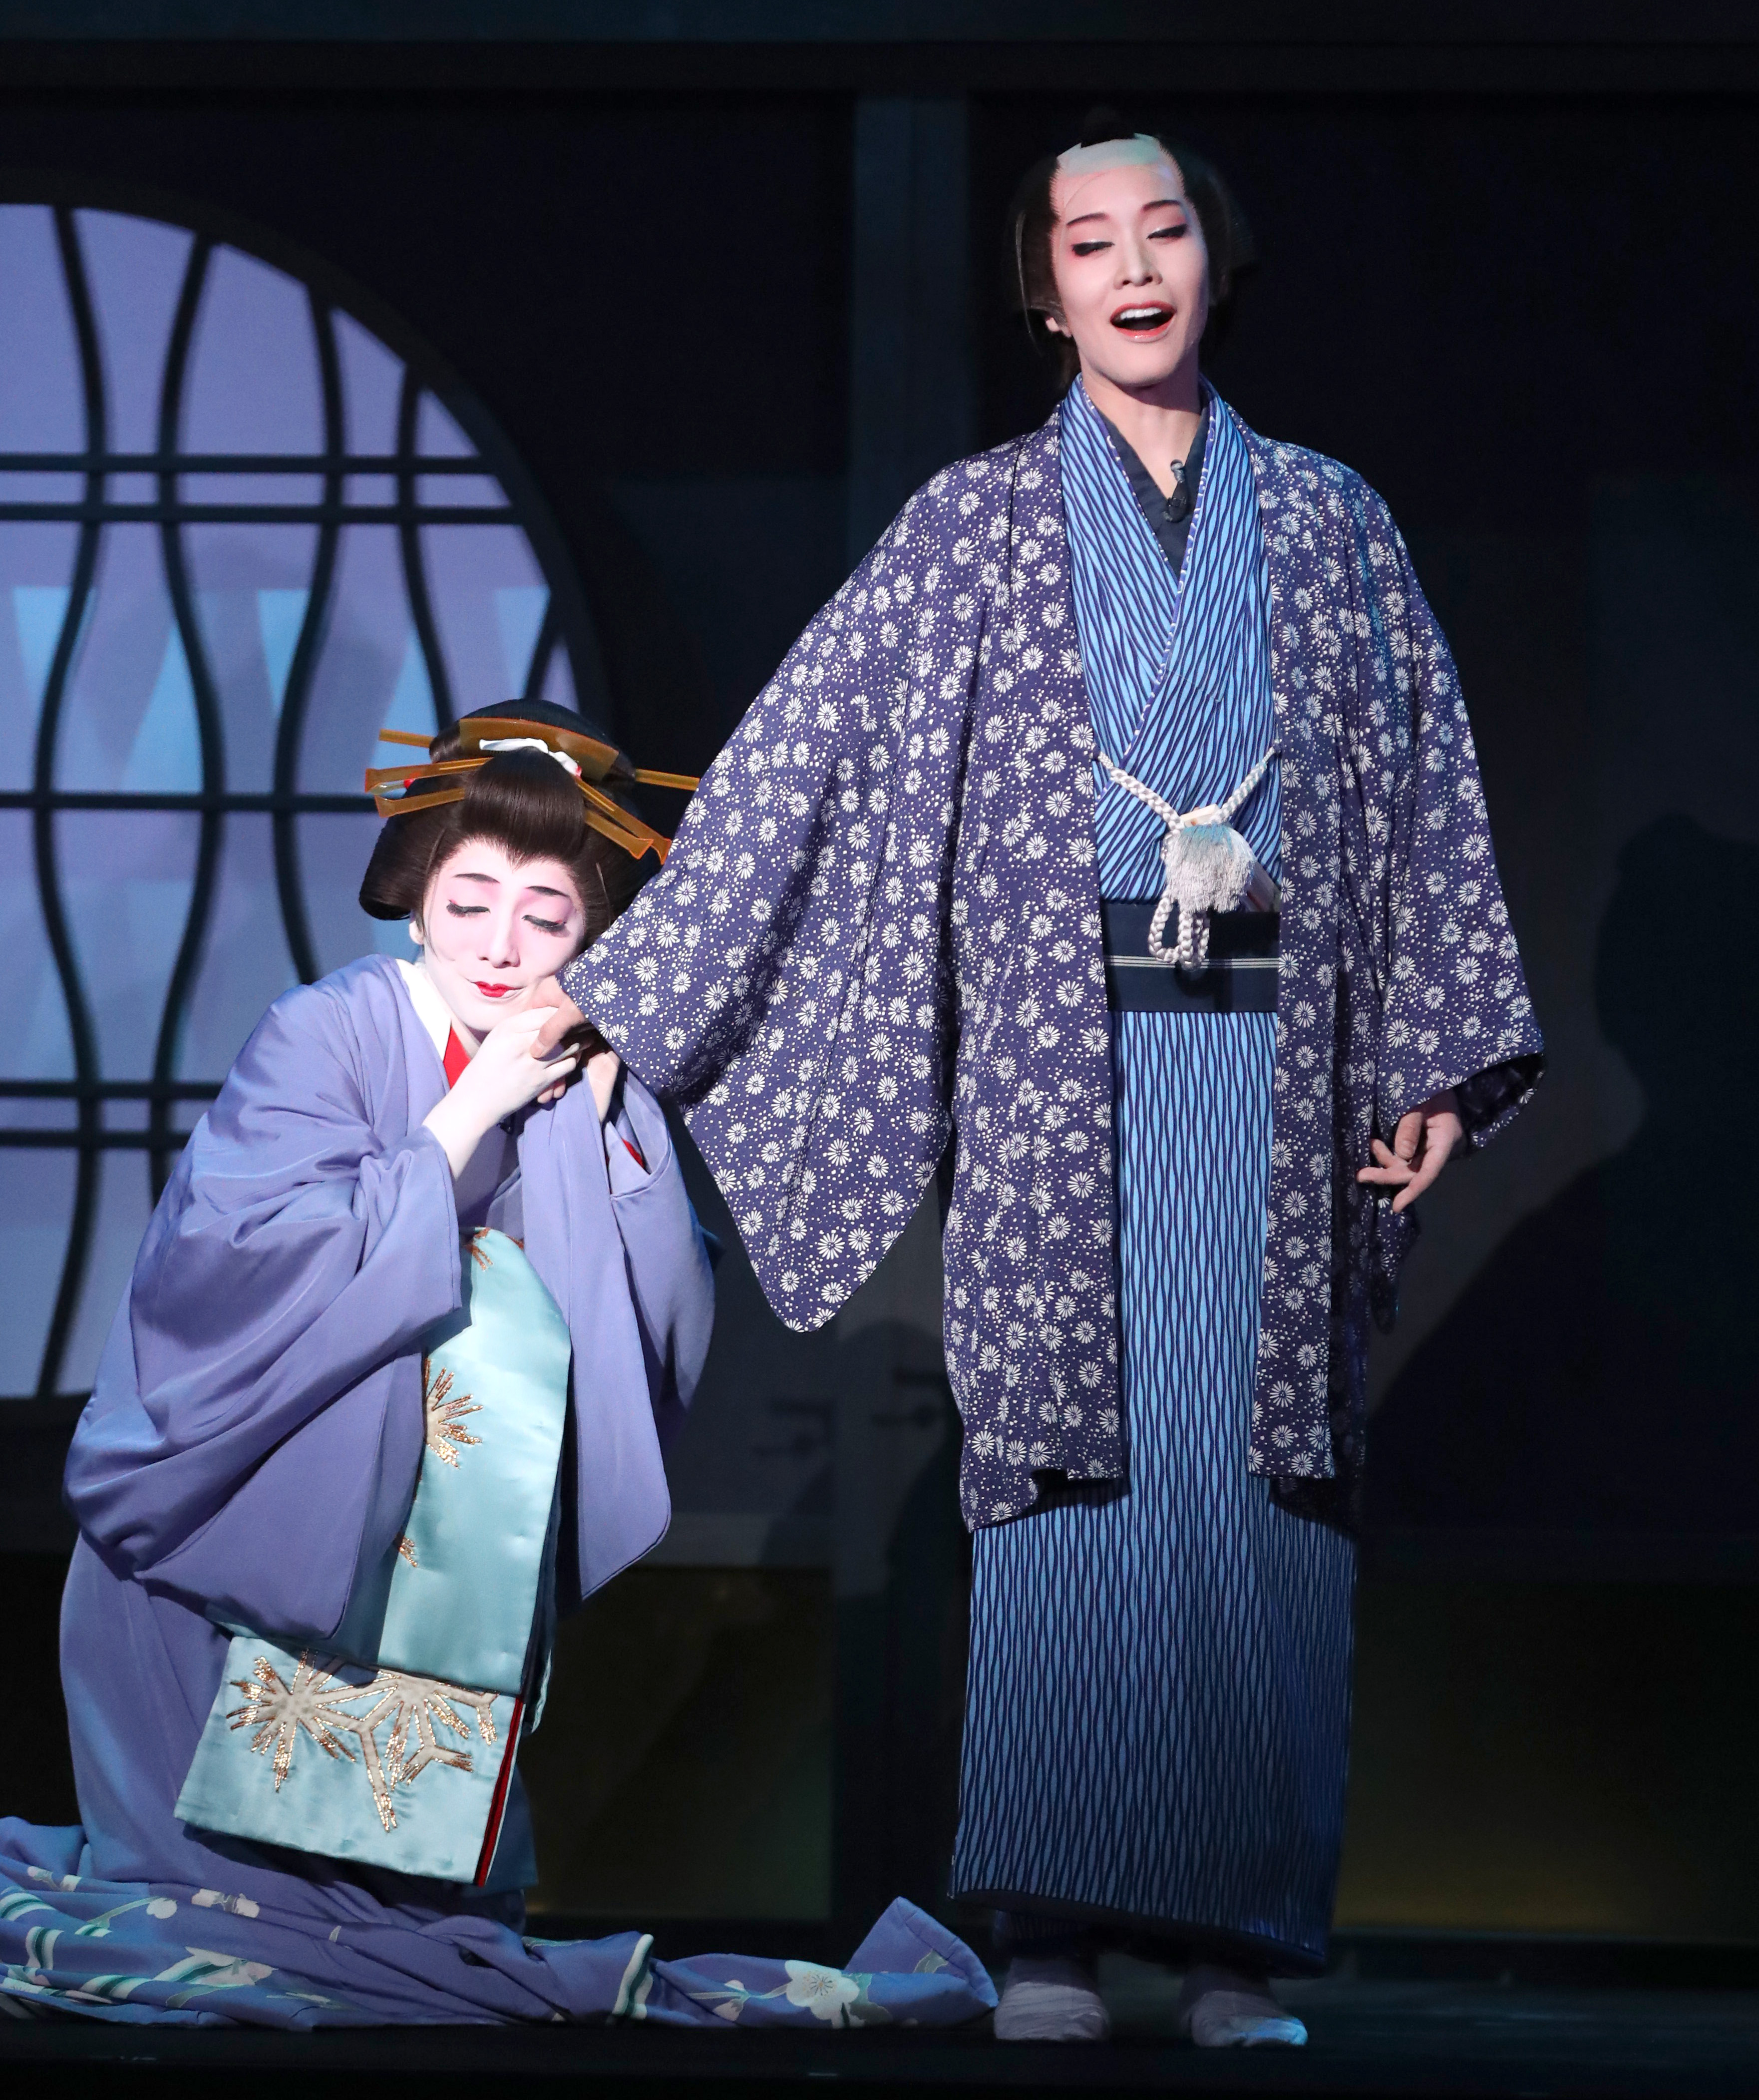 宝塚雪組男役和希そら東上初主演「心中・恋の大和路」が開幕 - サンスポ